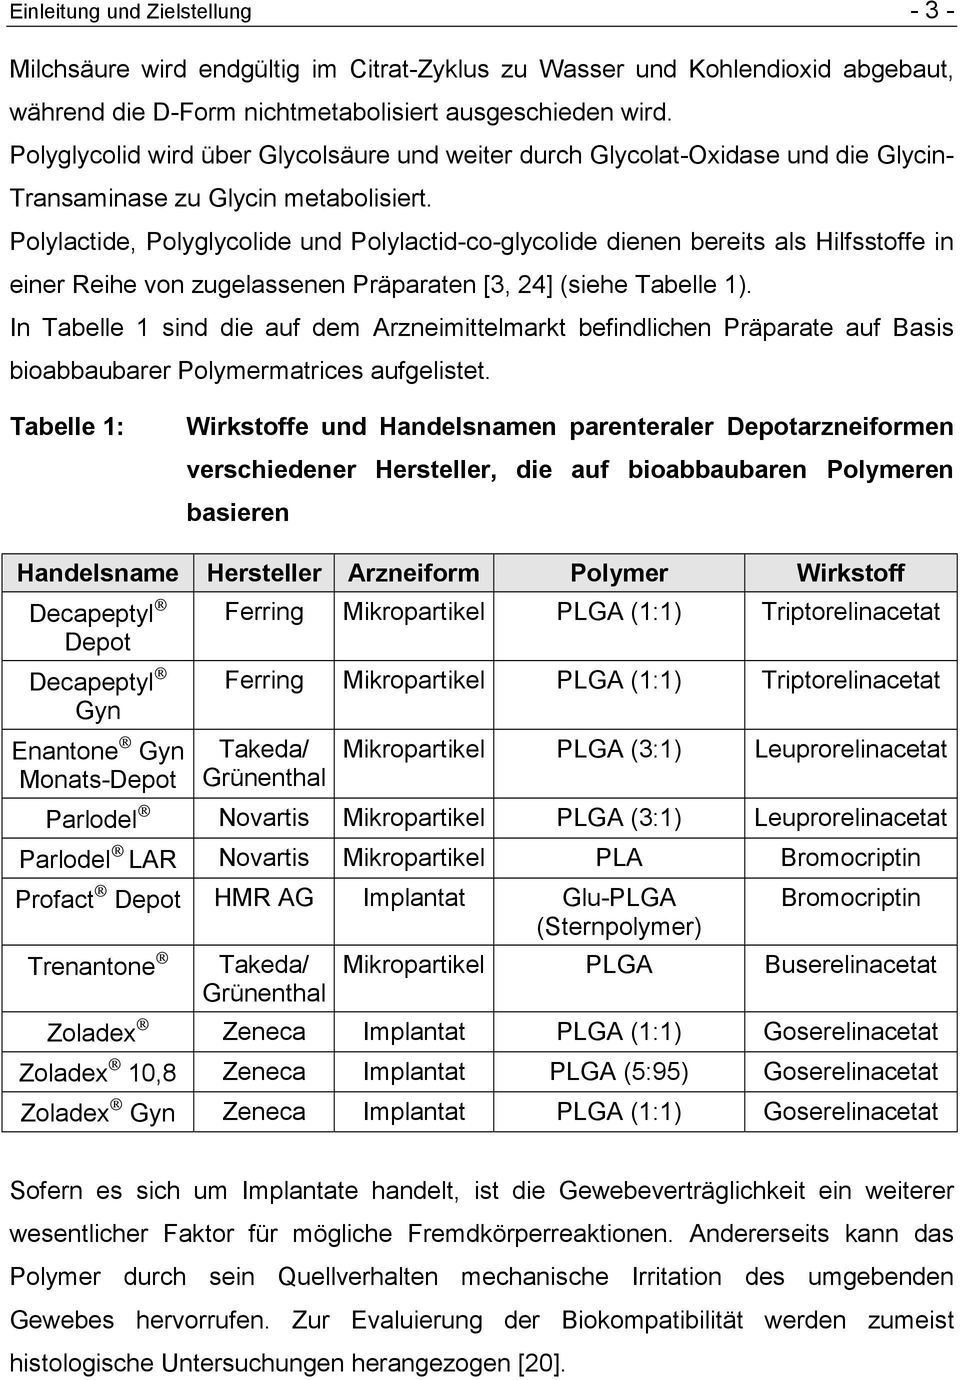 Polylactide, Polyglycolide und Polylactid-co-glycolide dienen bereits als Hilfsstoffe in einer Reihe von zugelassenen Präparaten [3, 24] (siehe Tabelle 1).